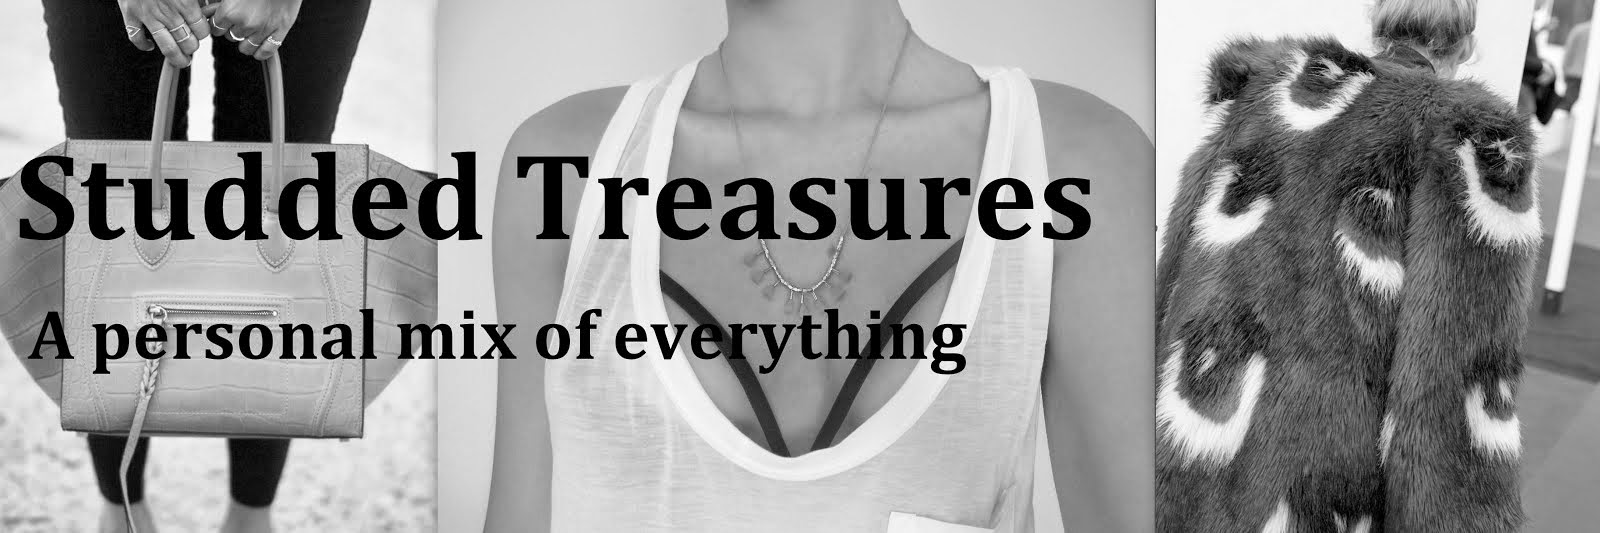 Studded Treasures